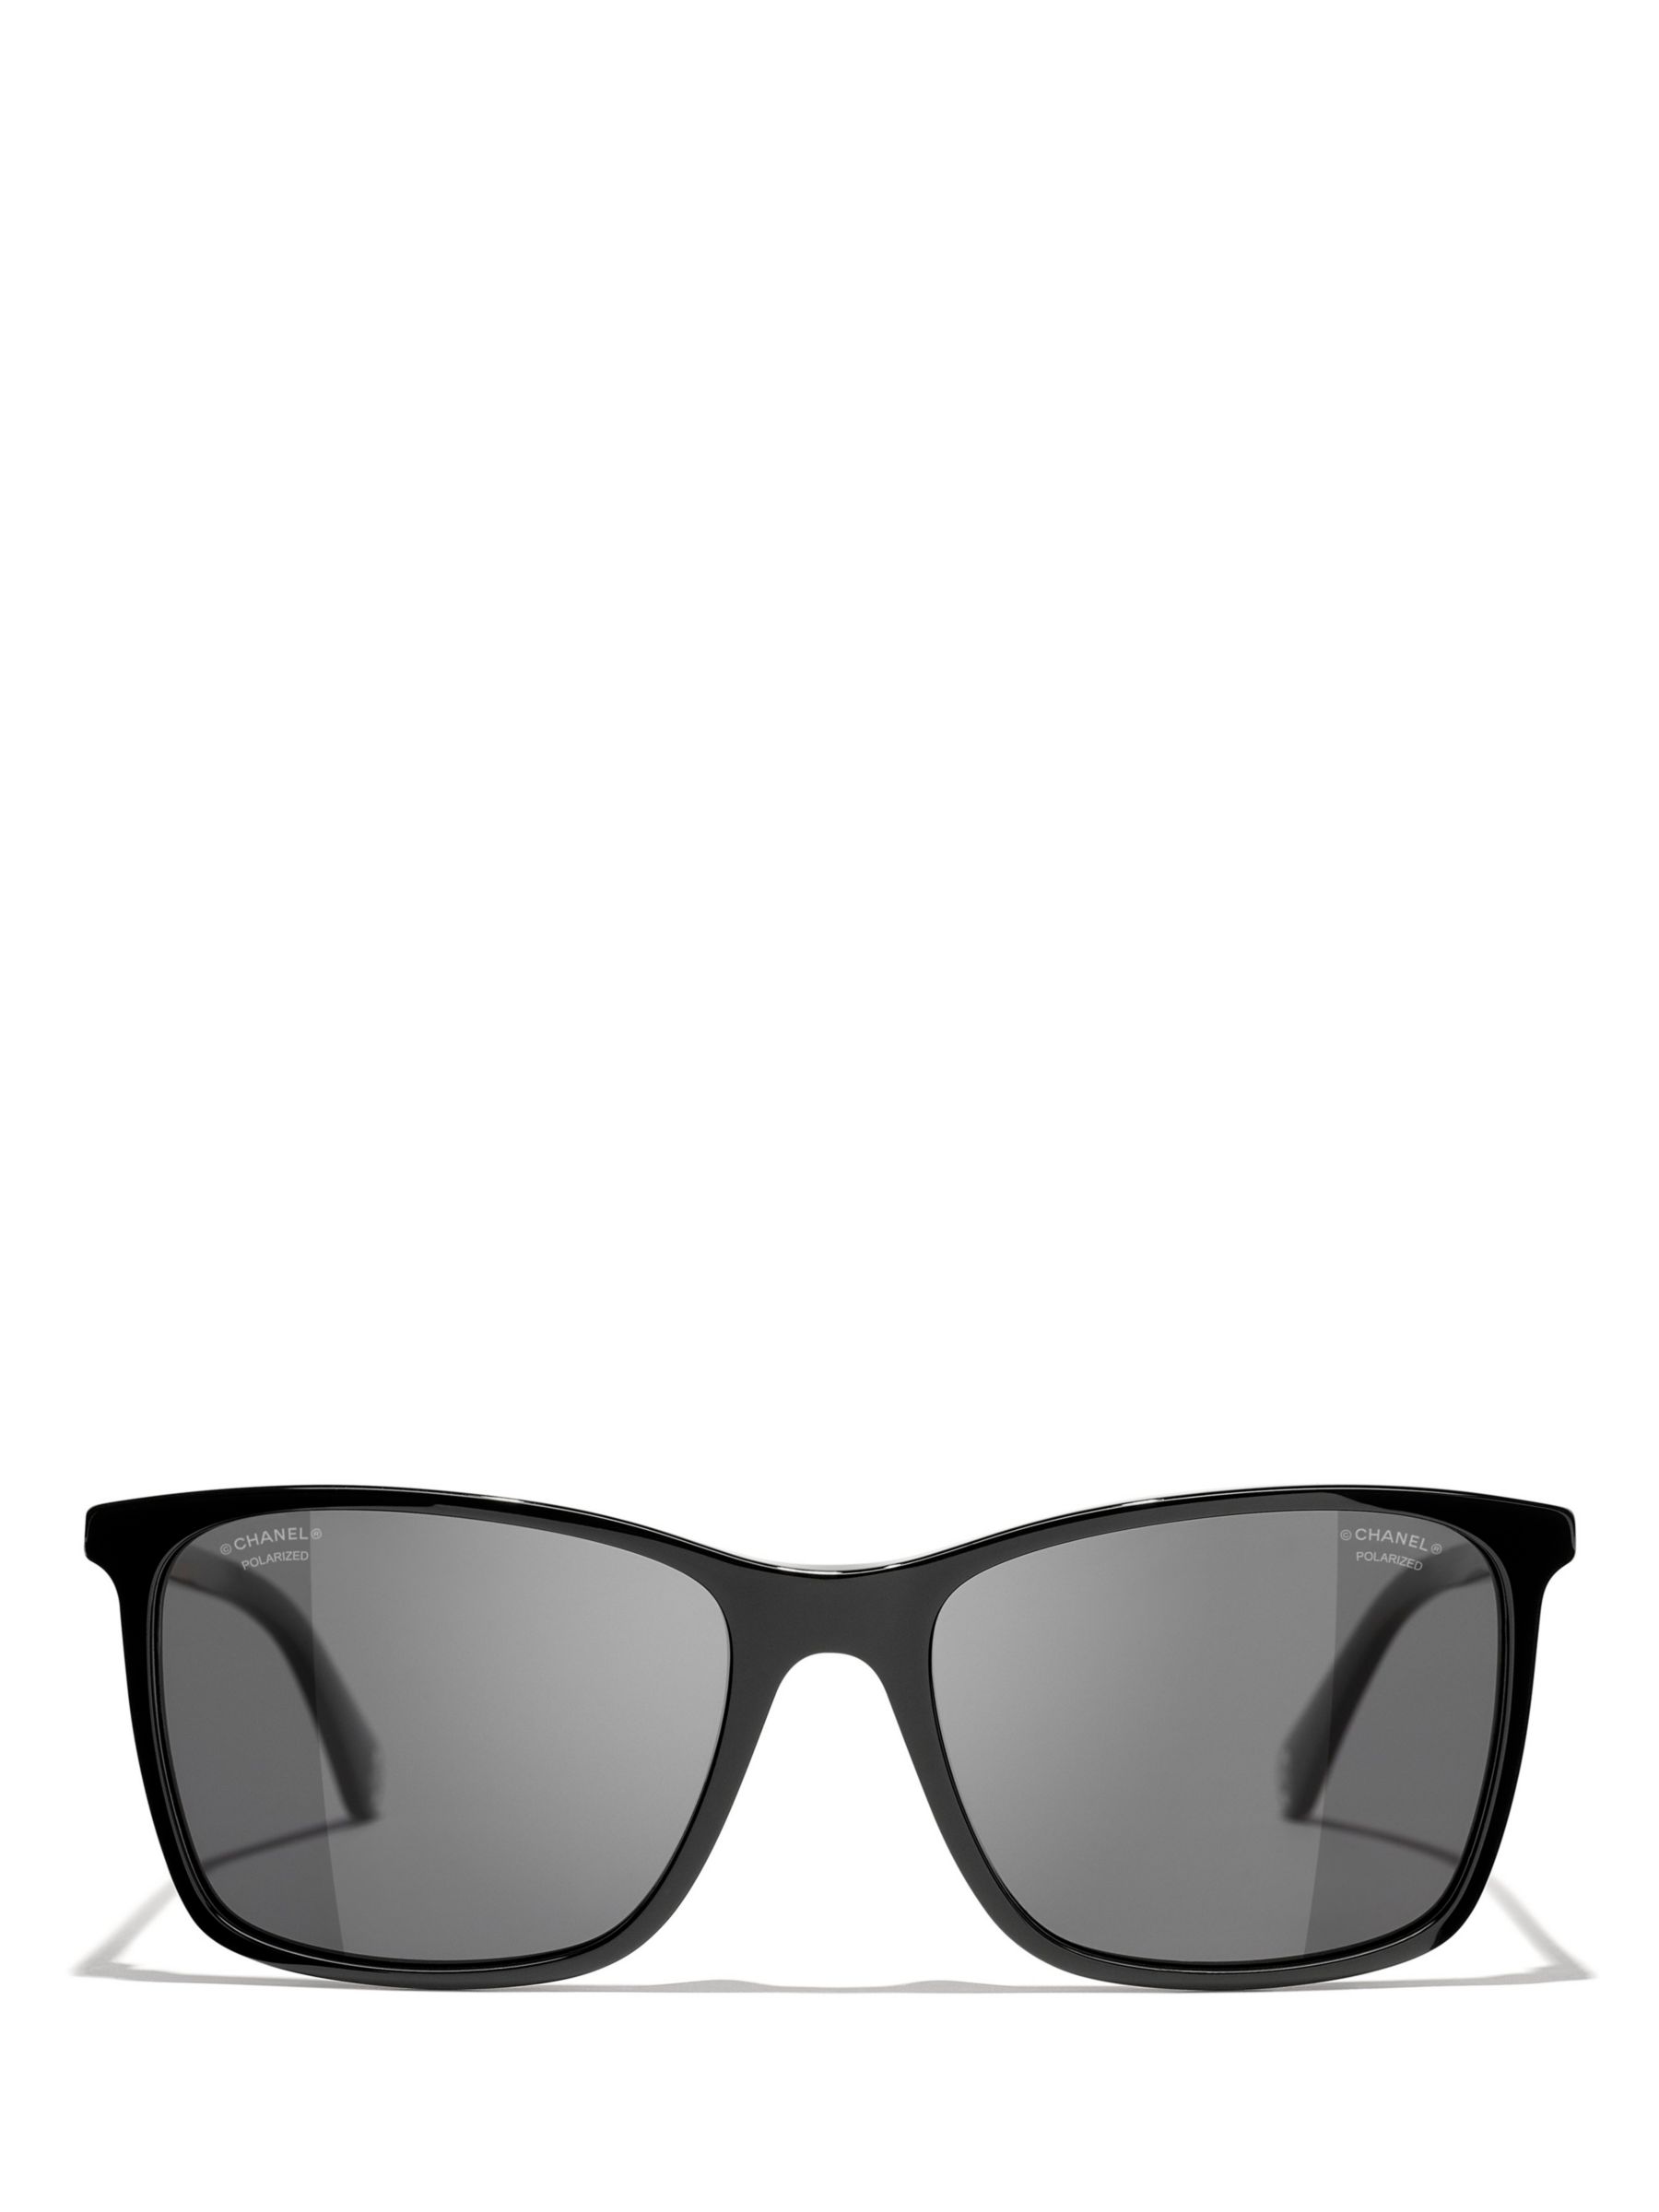 Chanel Rectangle Sunglasses CH5483 54 Grey & Black & White Sunglasses